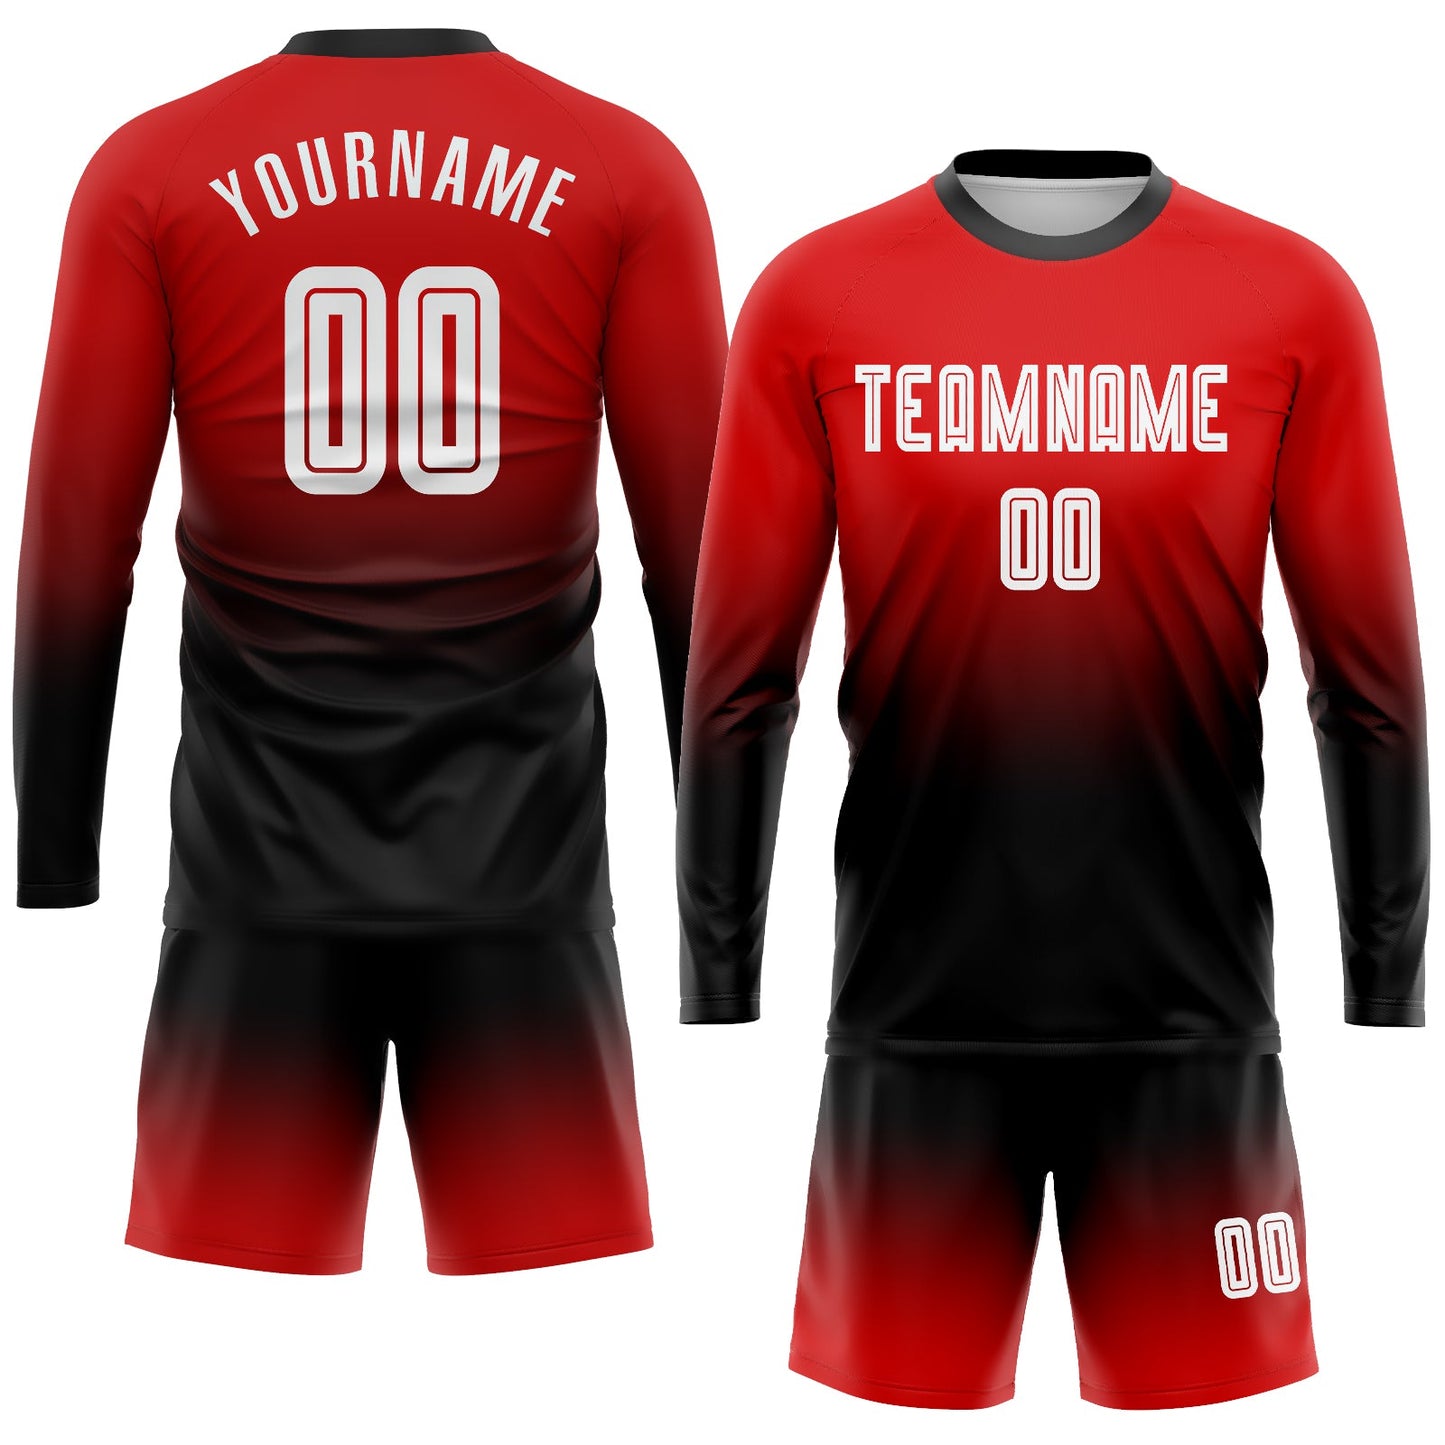 Maillot d'uniforme de football à manches longues, personnalisé, rouge, blanc et noir, fondu, à la mode, par Sublimation